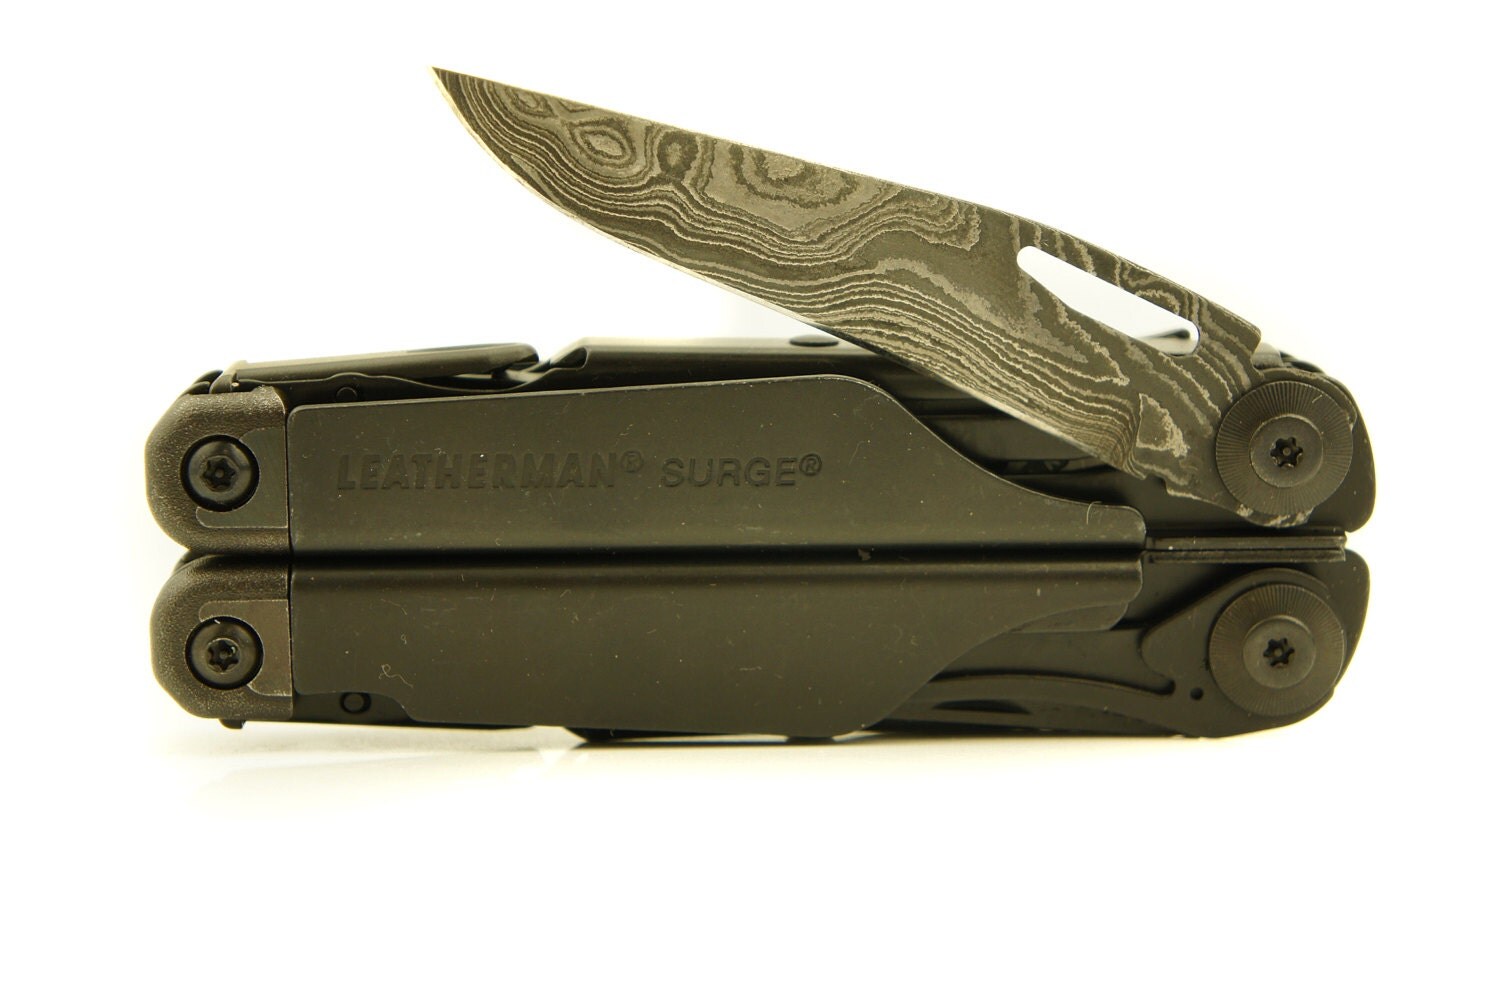 leatherman surge multi tool knife